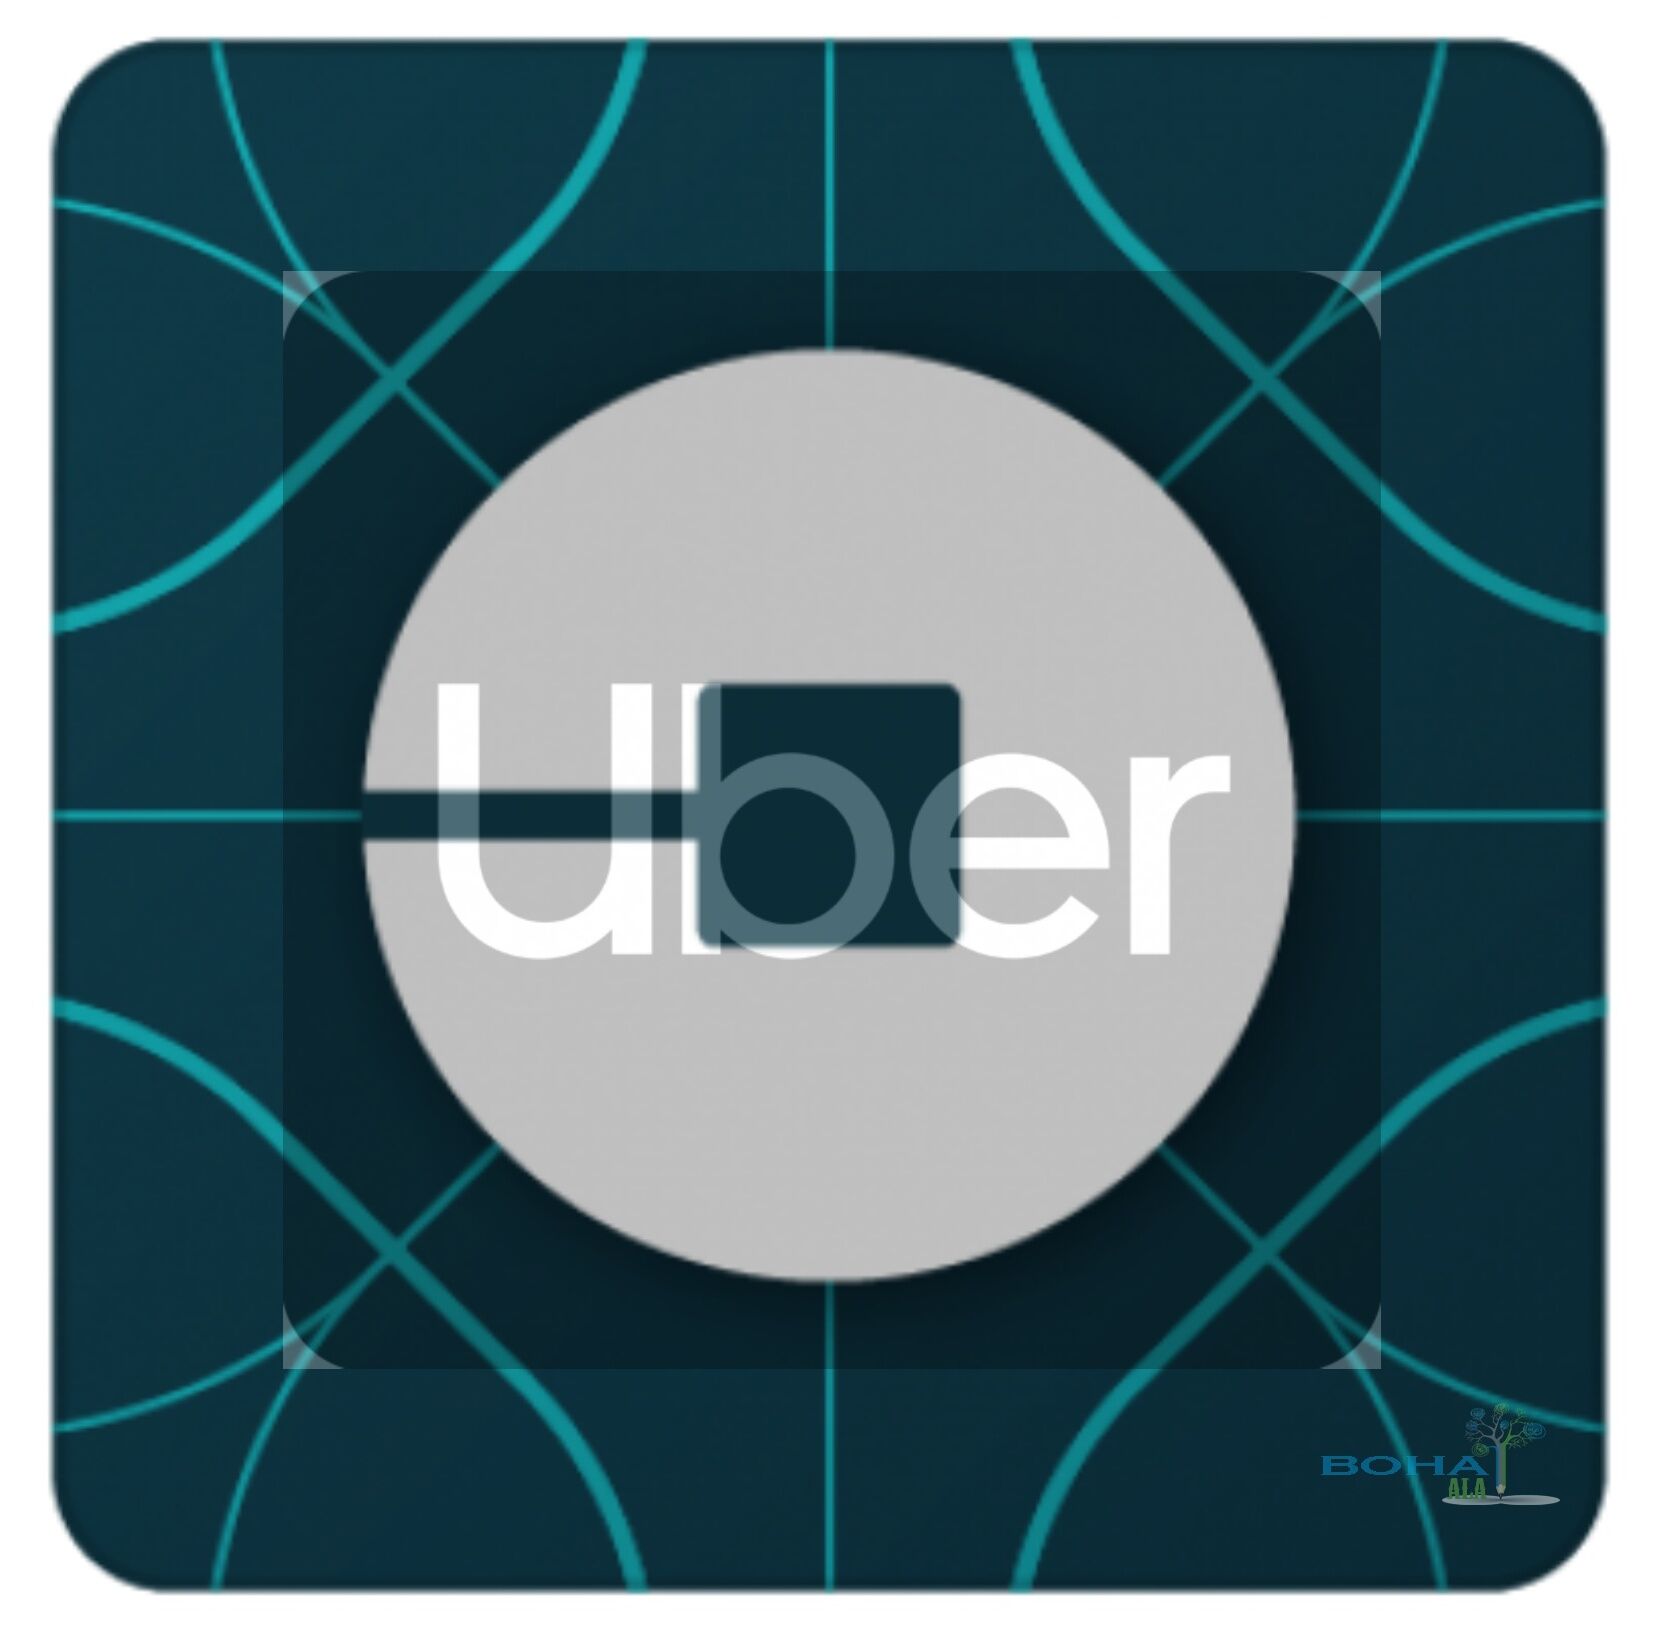 Uber Strategic Management Practices